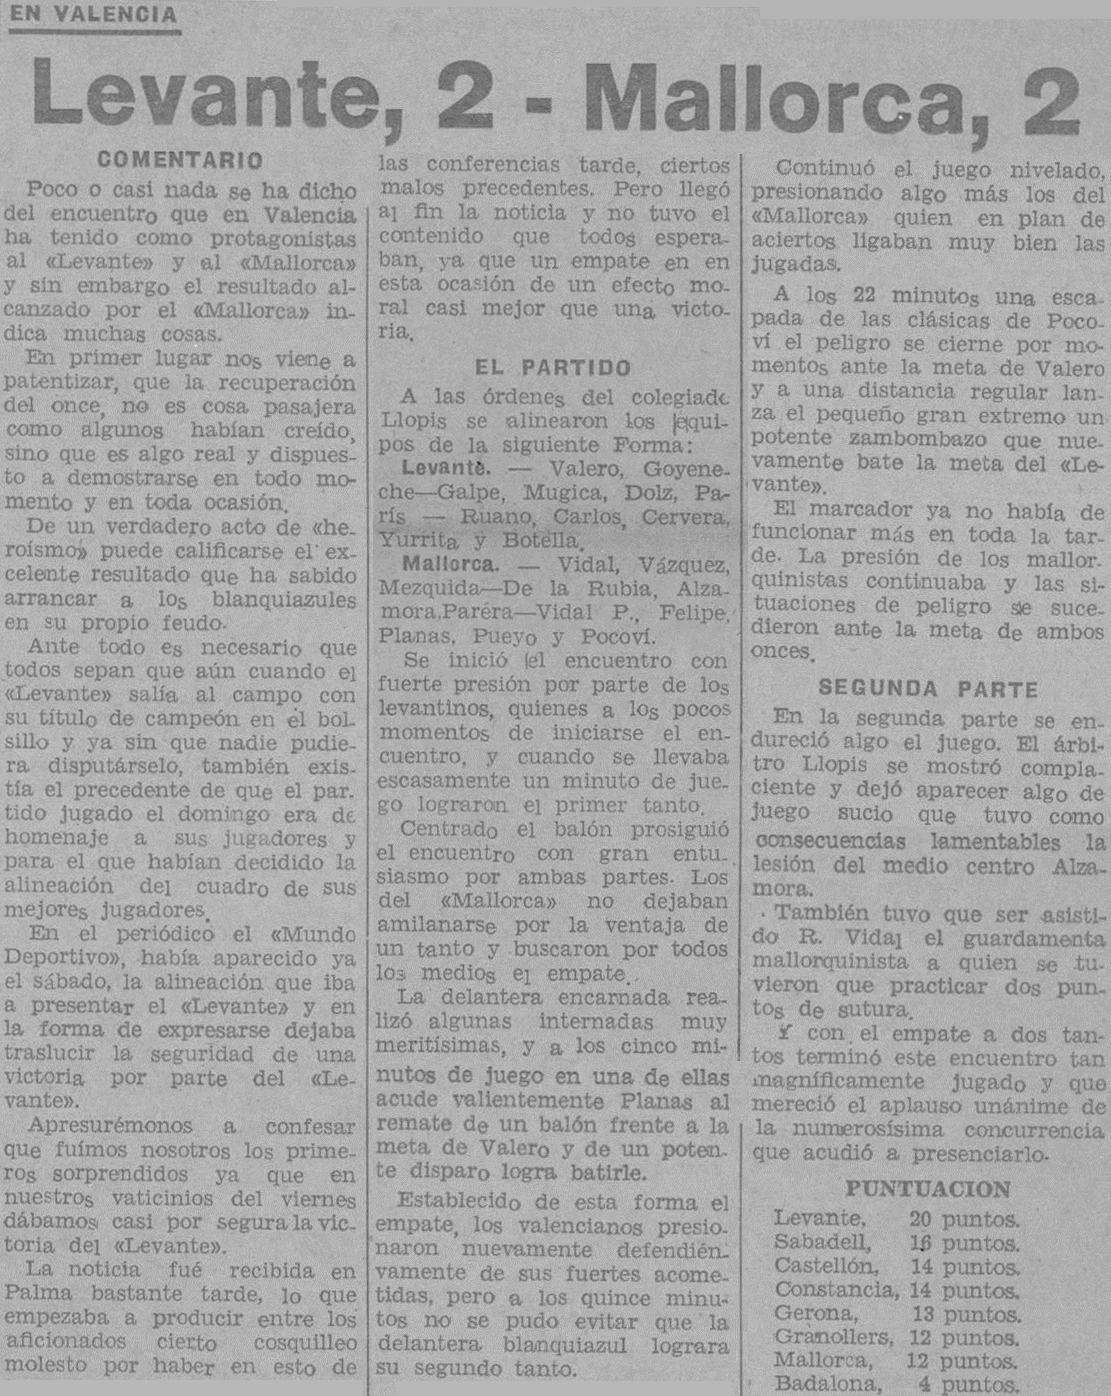 1940.02.25 (25 февраля 1940), Леванте - Мальорка, 2-2.png